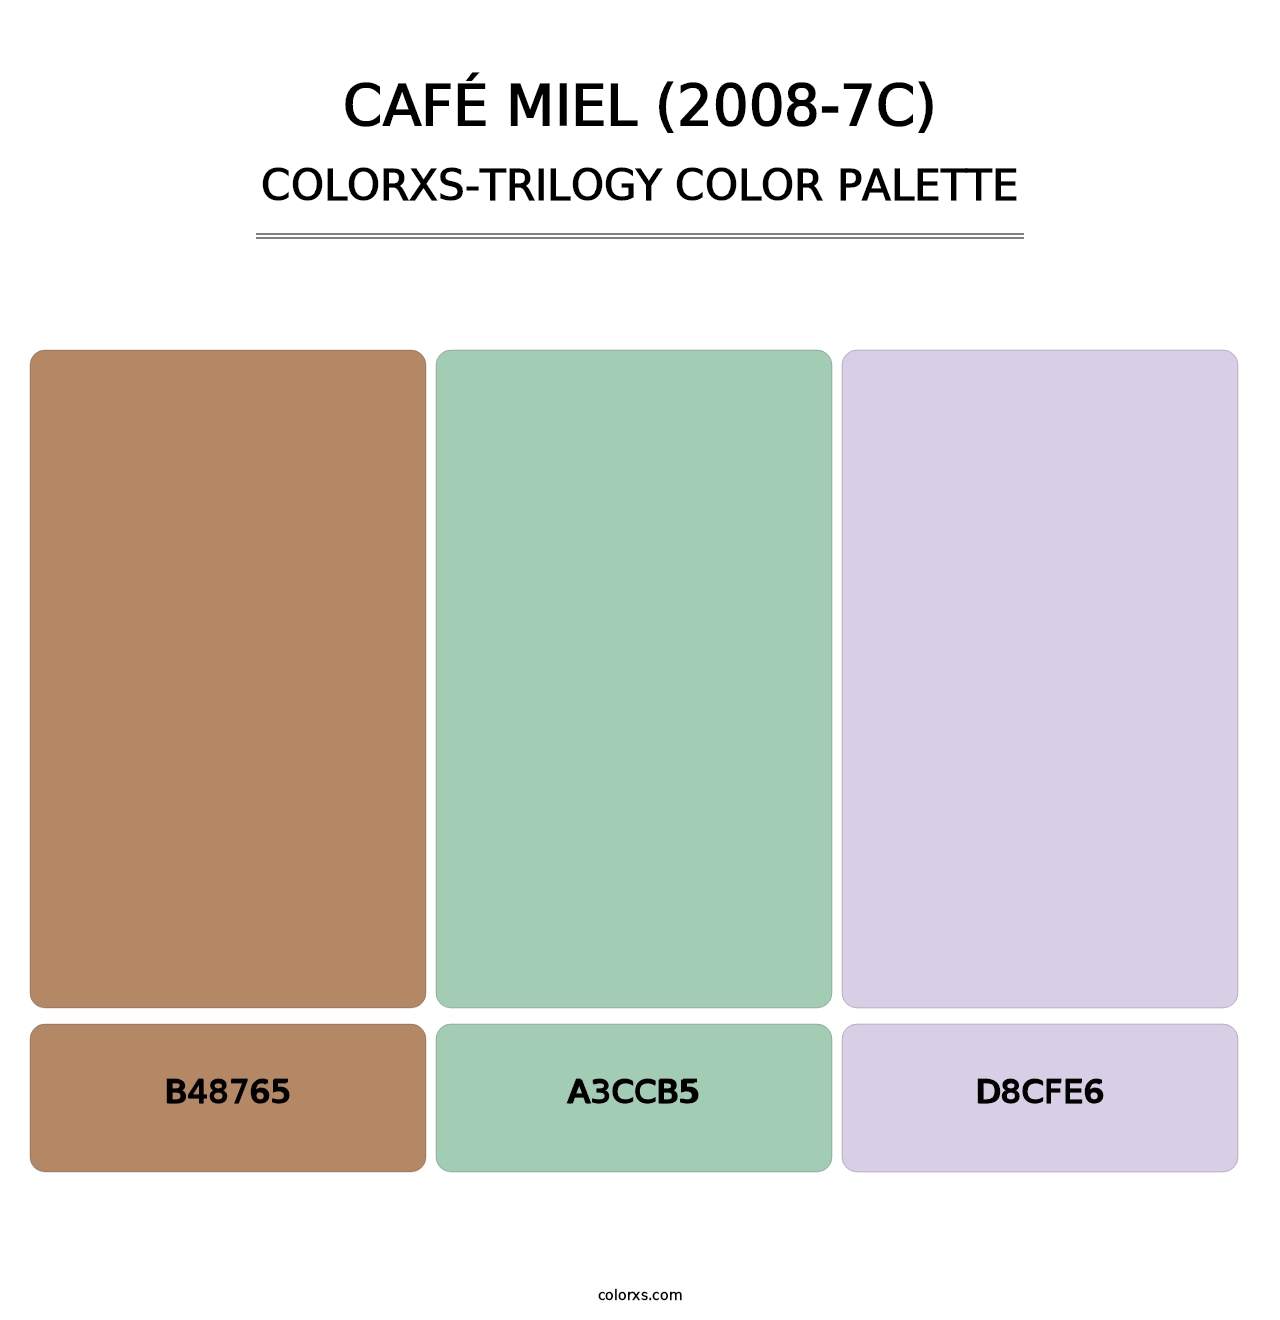 Café Miel (2008-7C) - Colorxs Trilogy Palette